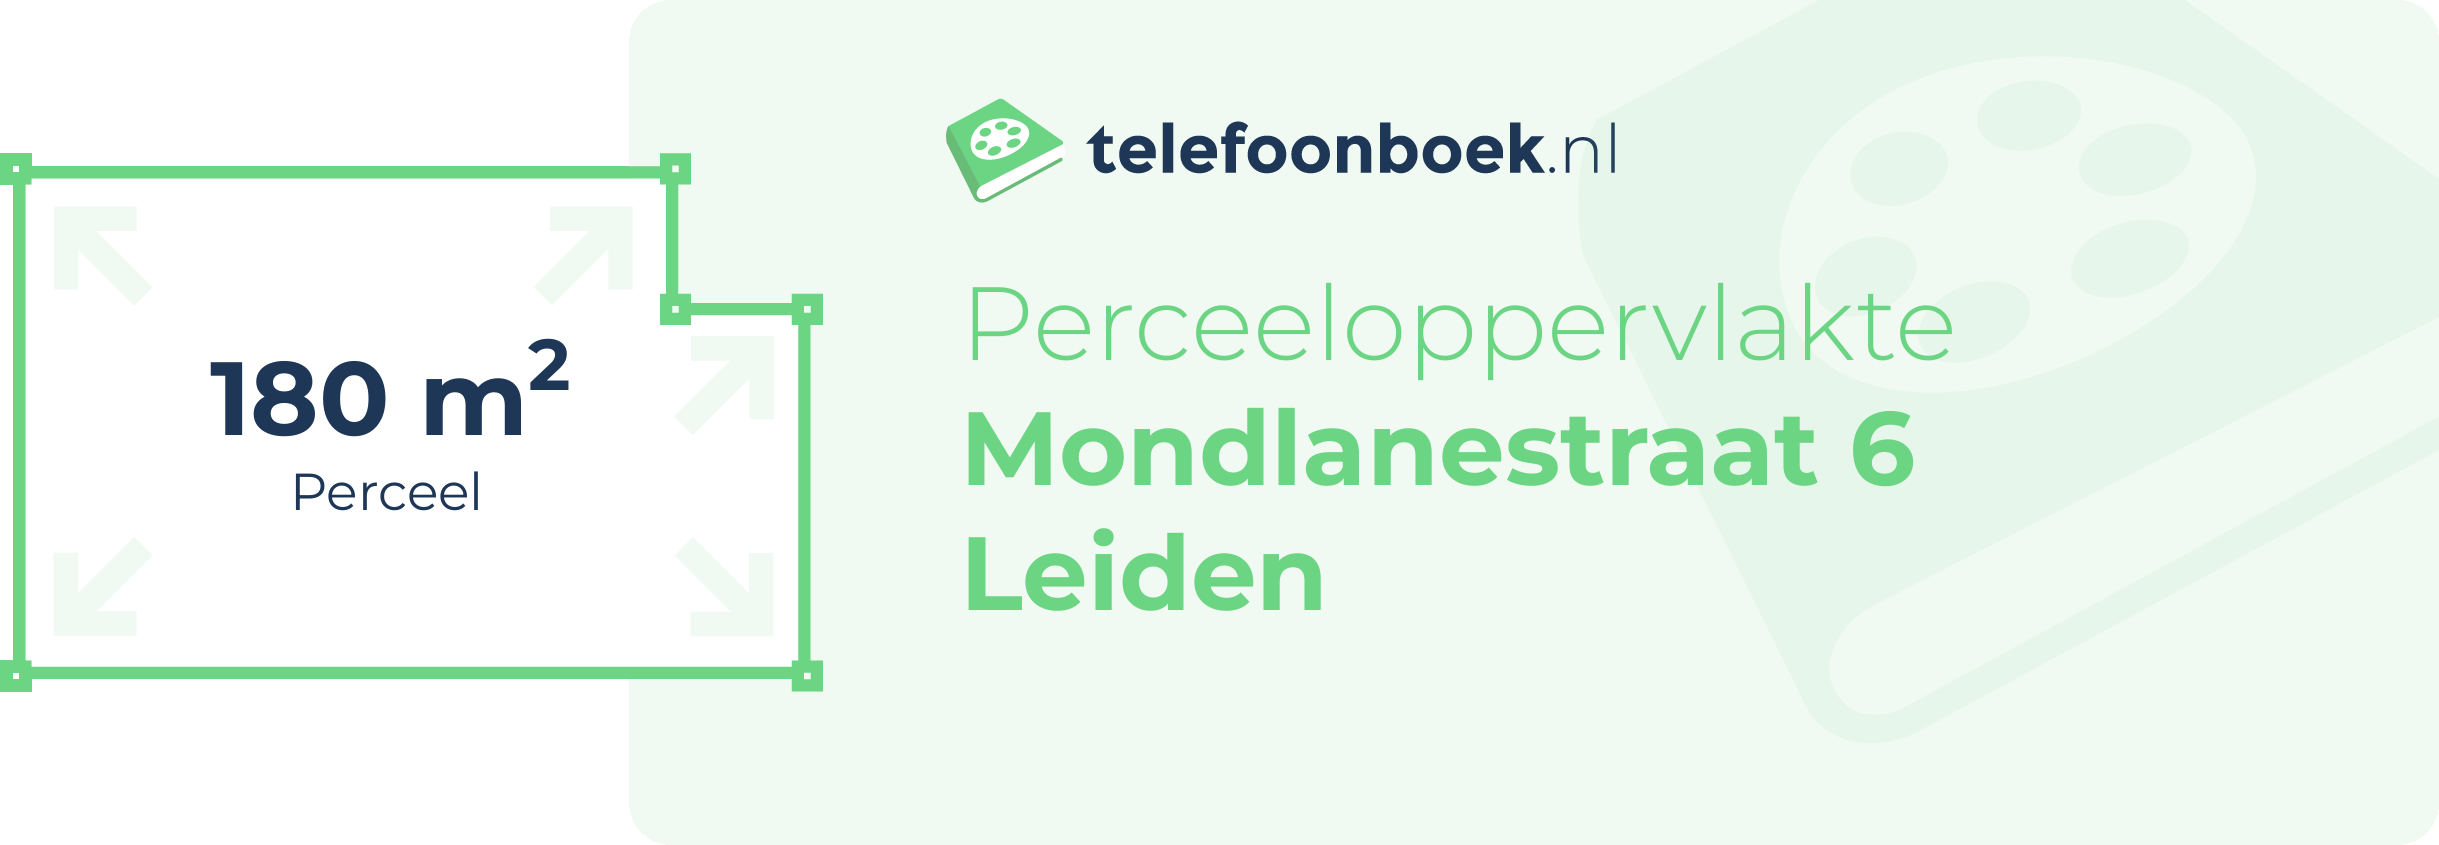 Perceeloppervlakte Mondlanestraat 6 Leiden